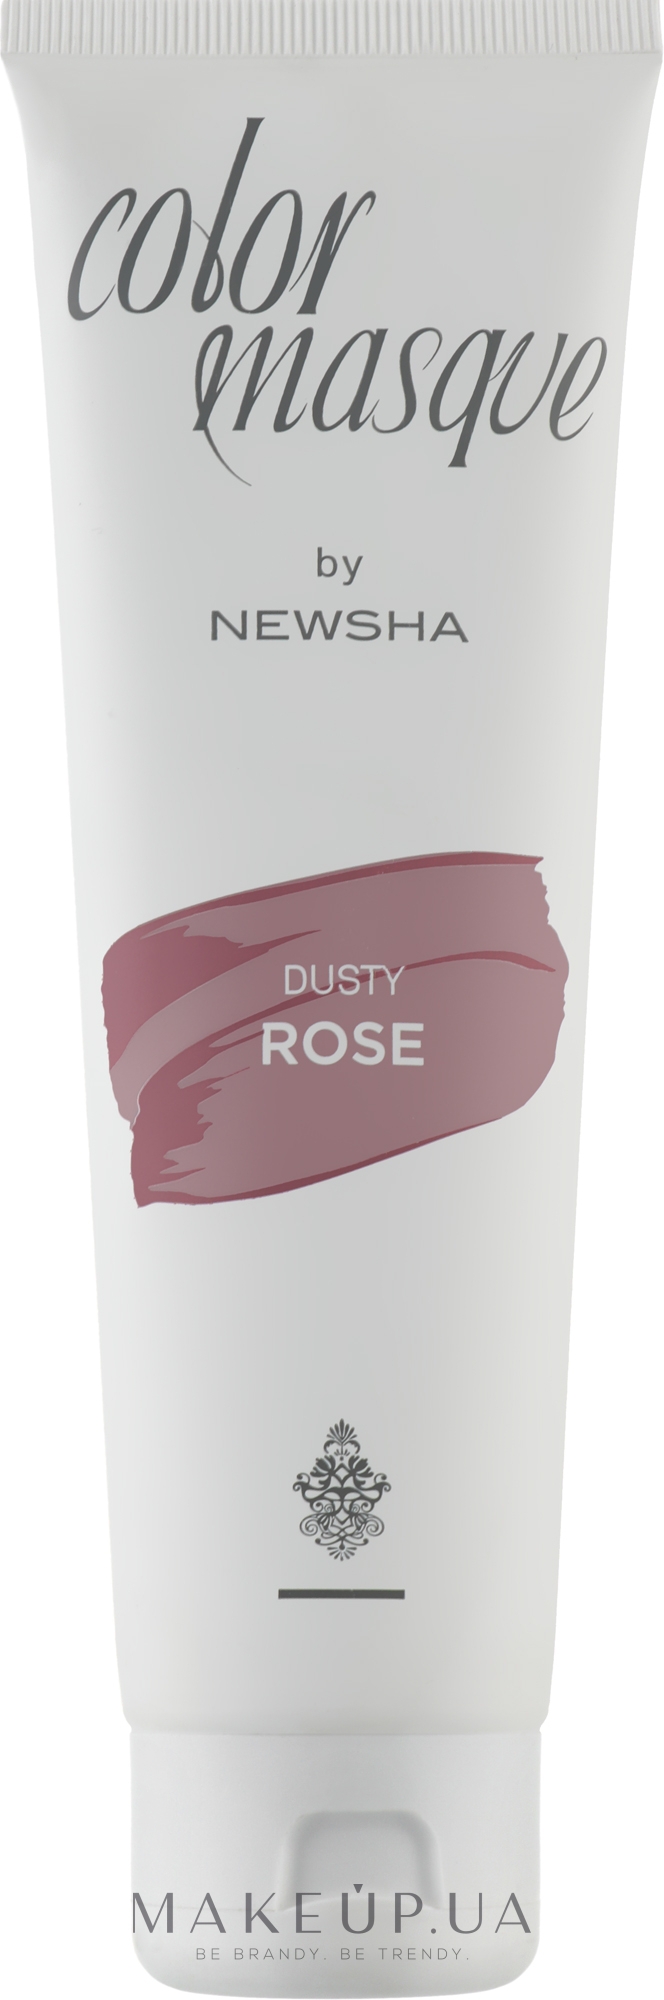 Кольорова маска для волосся - Newsha Color Masque Dusty Rose — фото 150ml